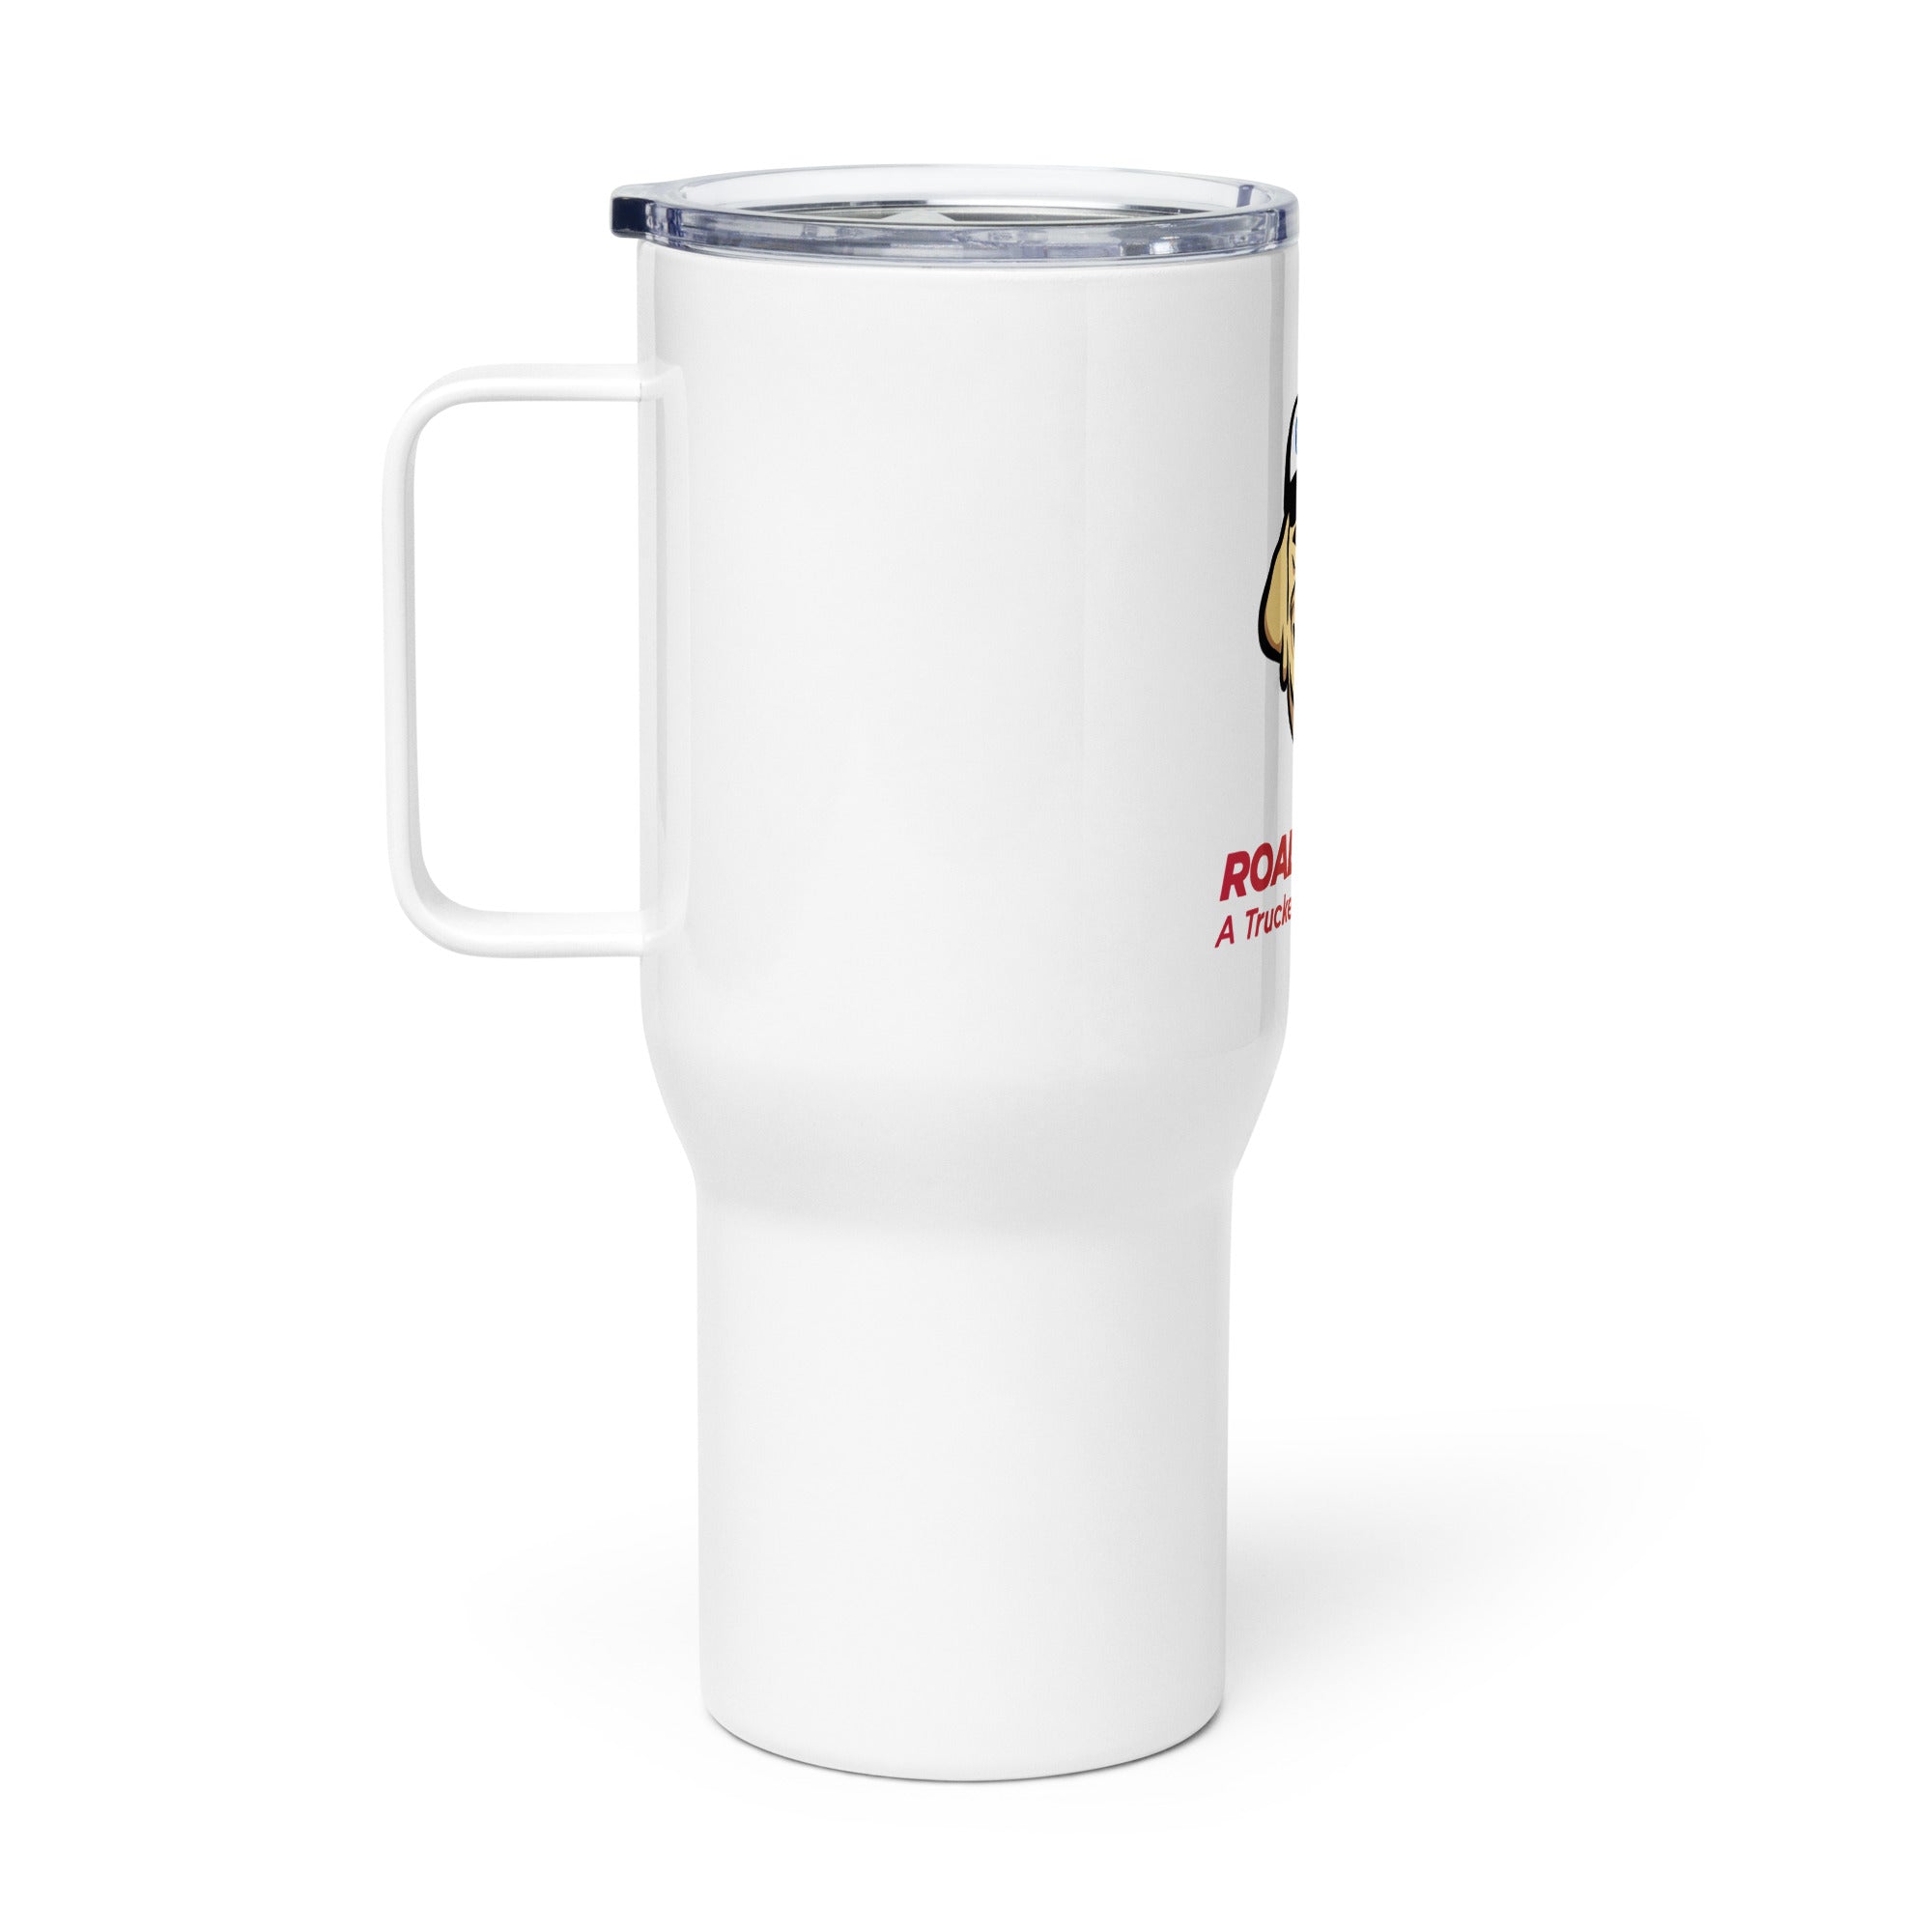 SiriusXM ROAD DOG BT Travel mug with a handle